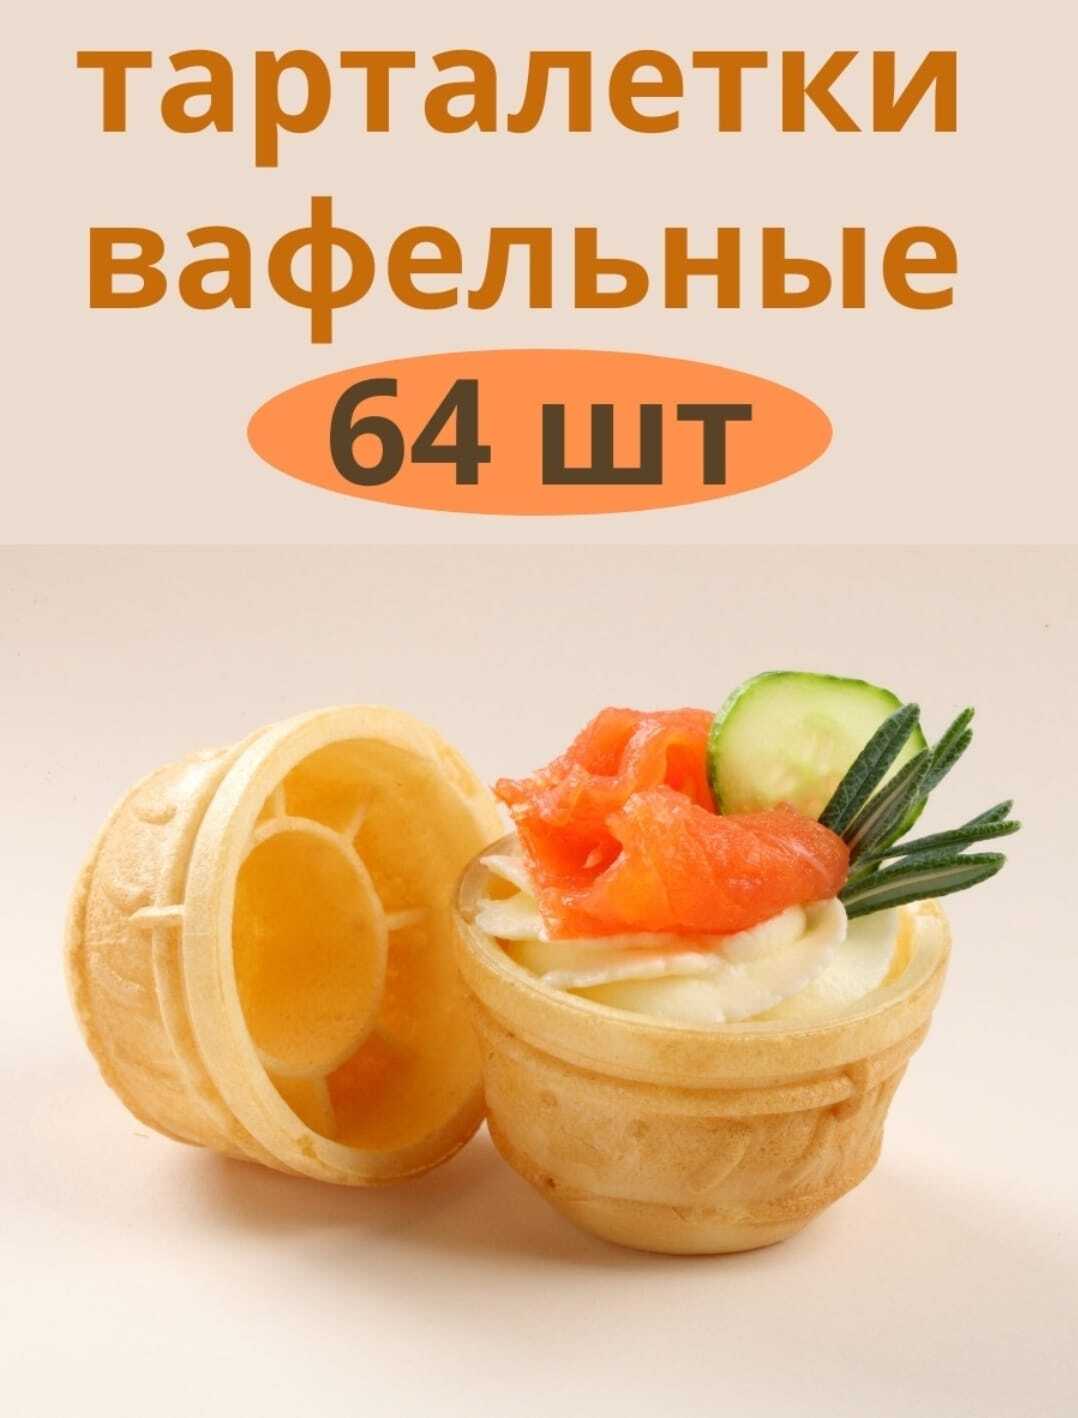 Тарталетки вафельные на фотодетки.рф